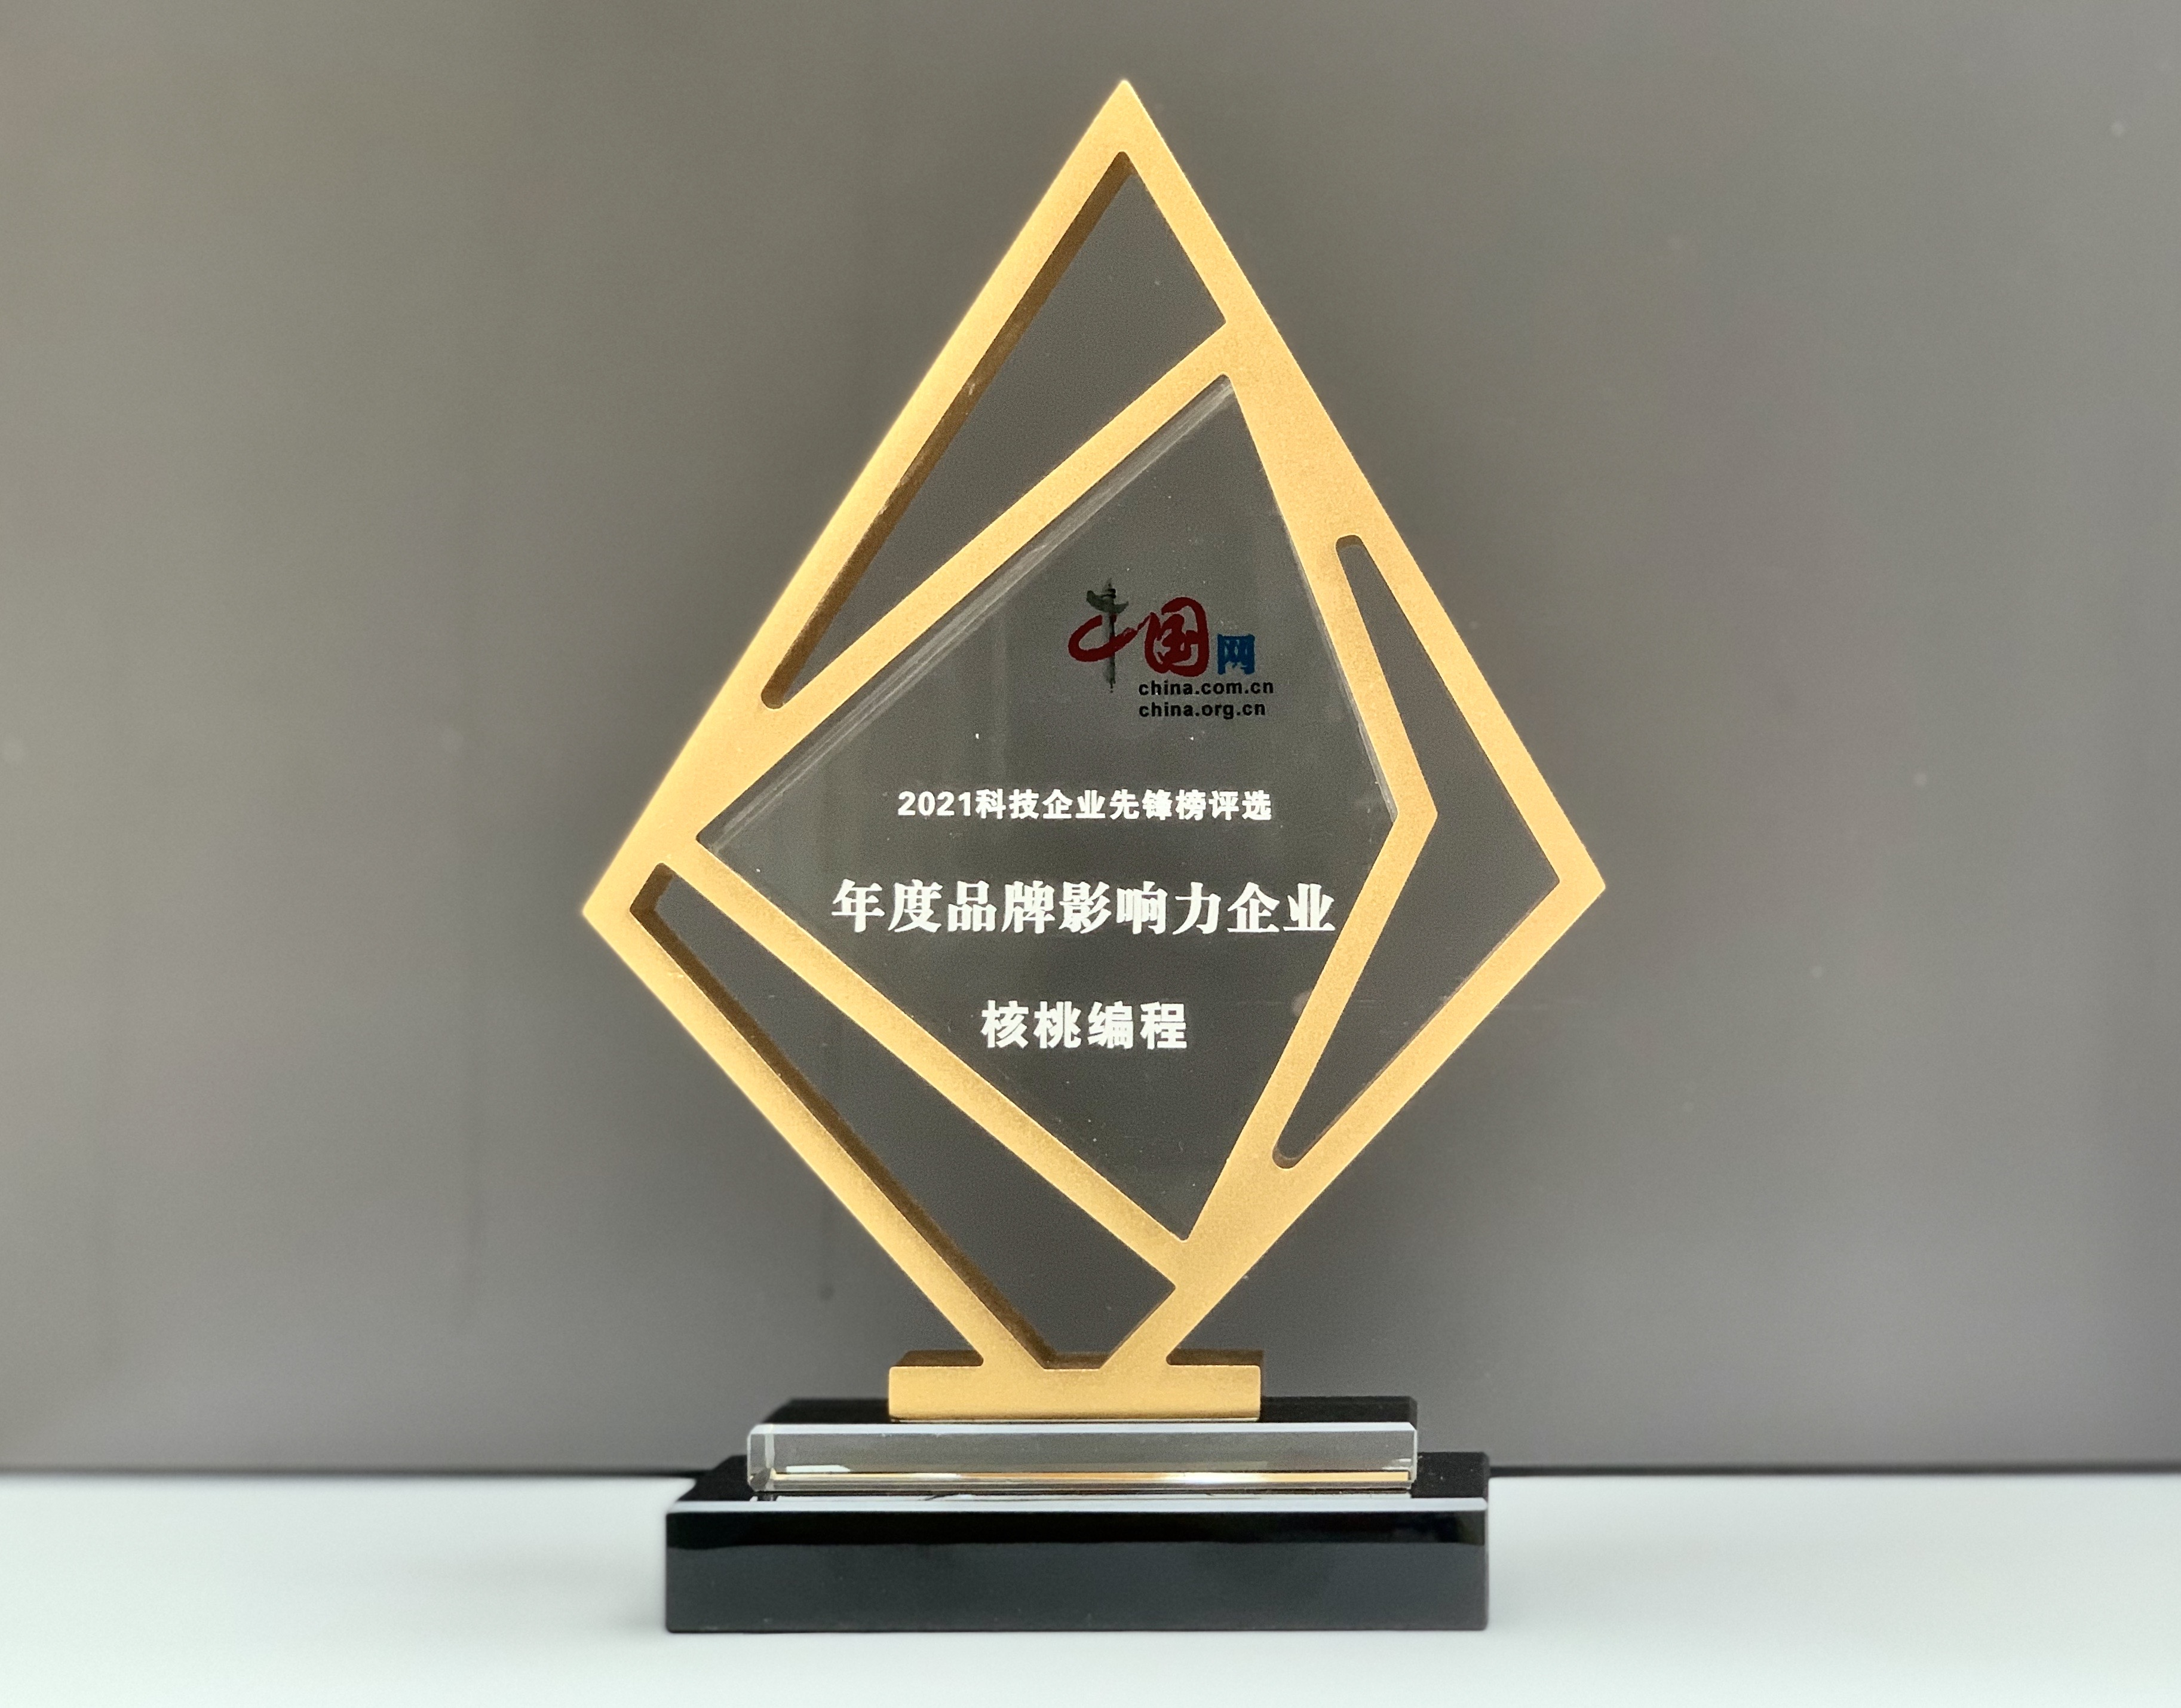 “核桃编程荣膺“2021中国网·科技企业先锋榜”年度品牌影响力企业